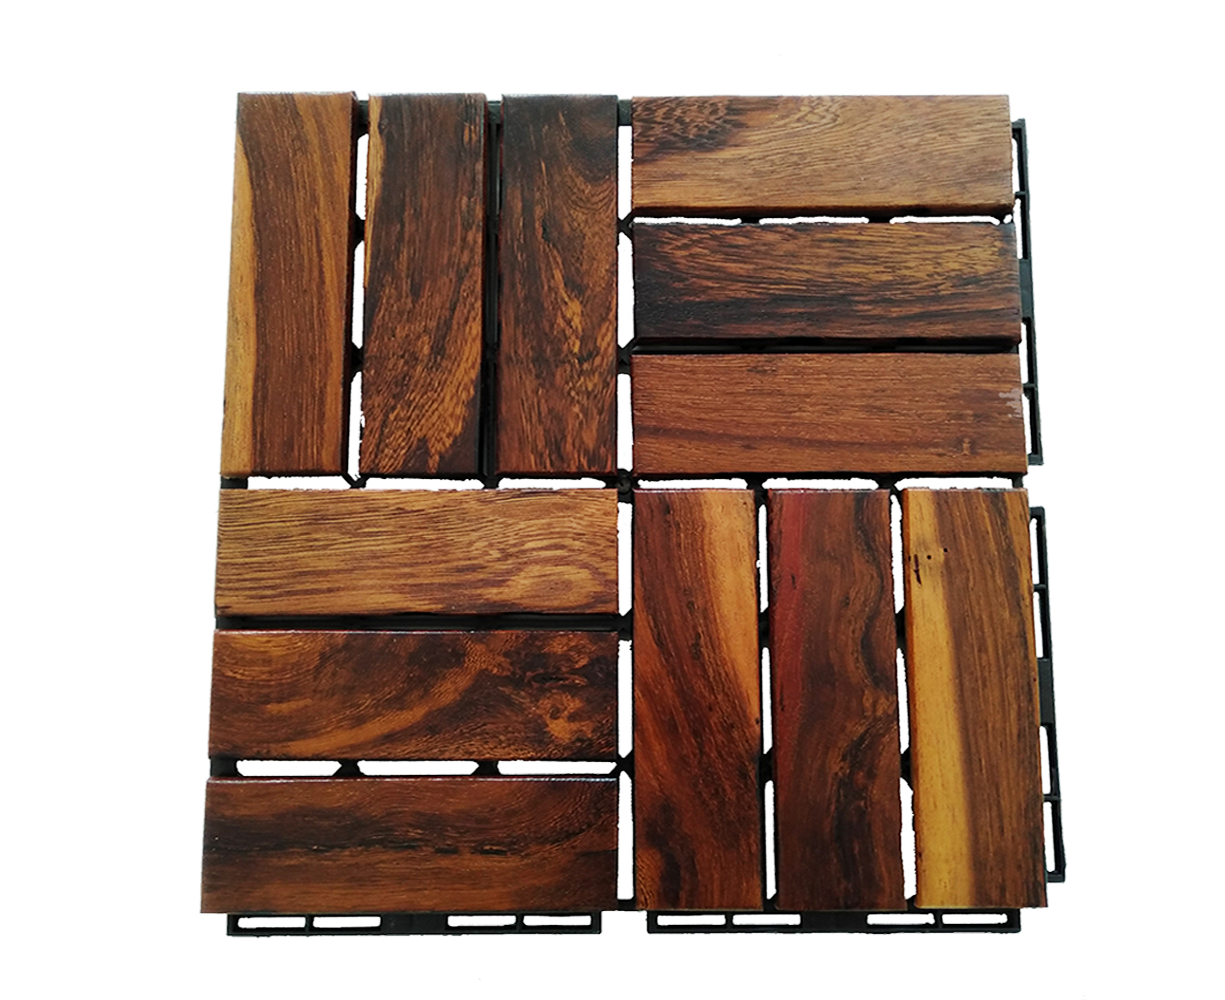 Vietnam walnut wood deck tiles